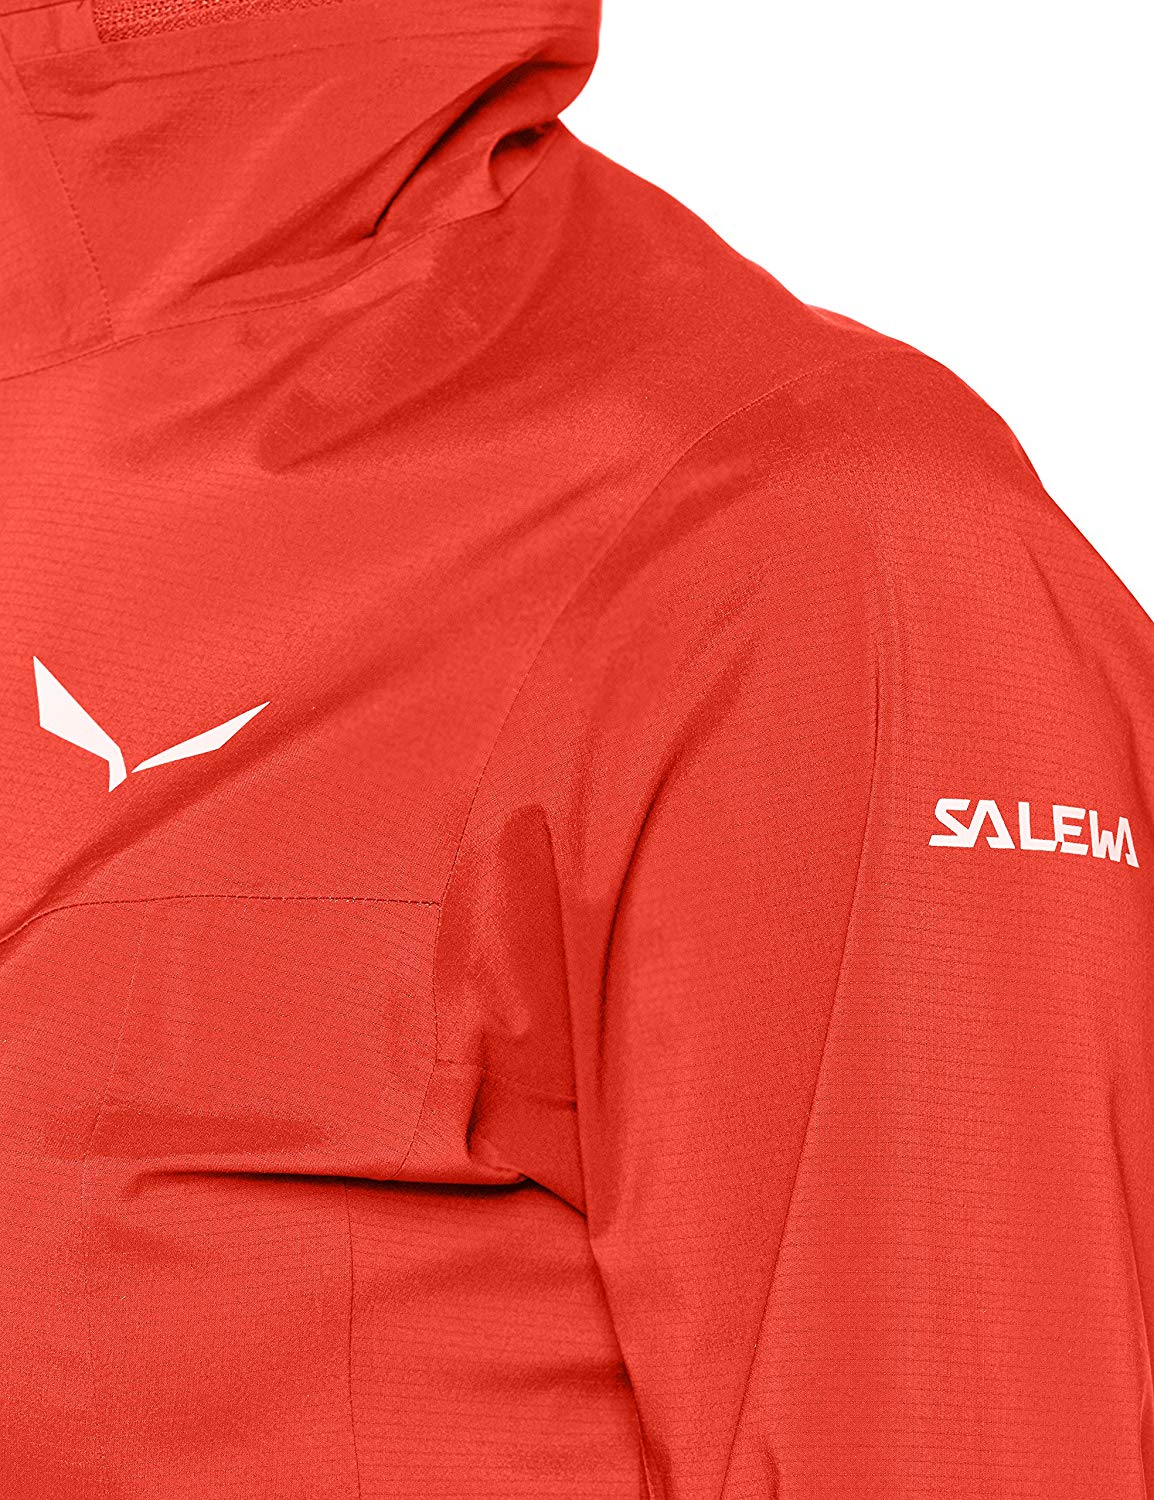 Salewa Ortles PTX 3L Stretch Jacket Salewa ktmart.vn 9